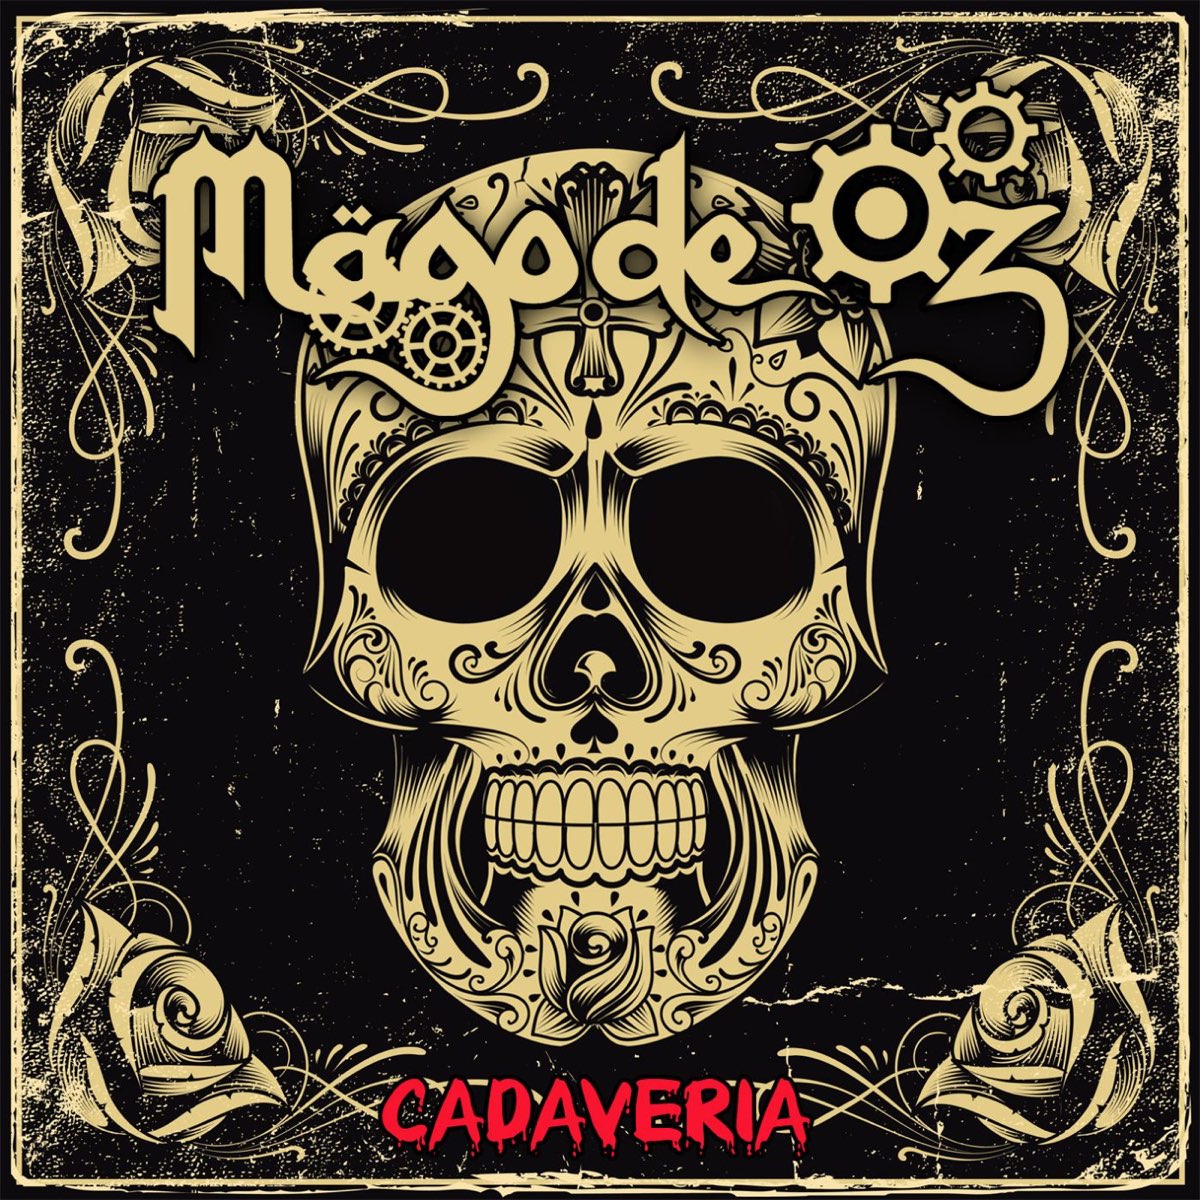 Mago de oz. Группа Mägo de oz. Cadaveria. Mago de oz обложка для футболки. Mago de oz Love and oz, Vol. 2.